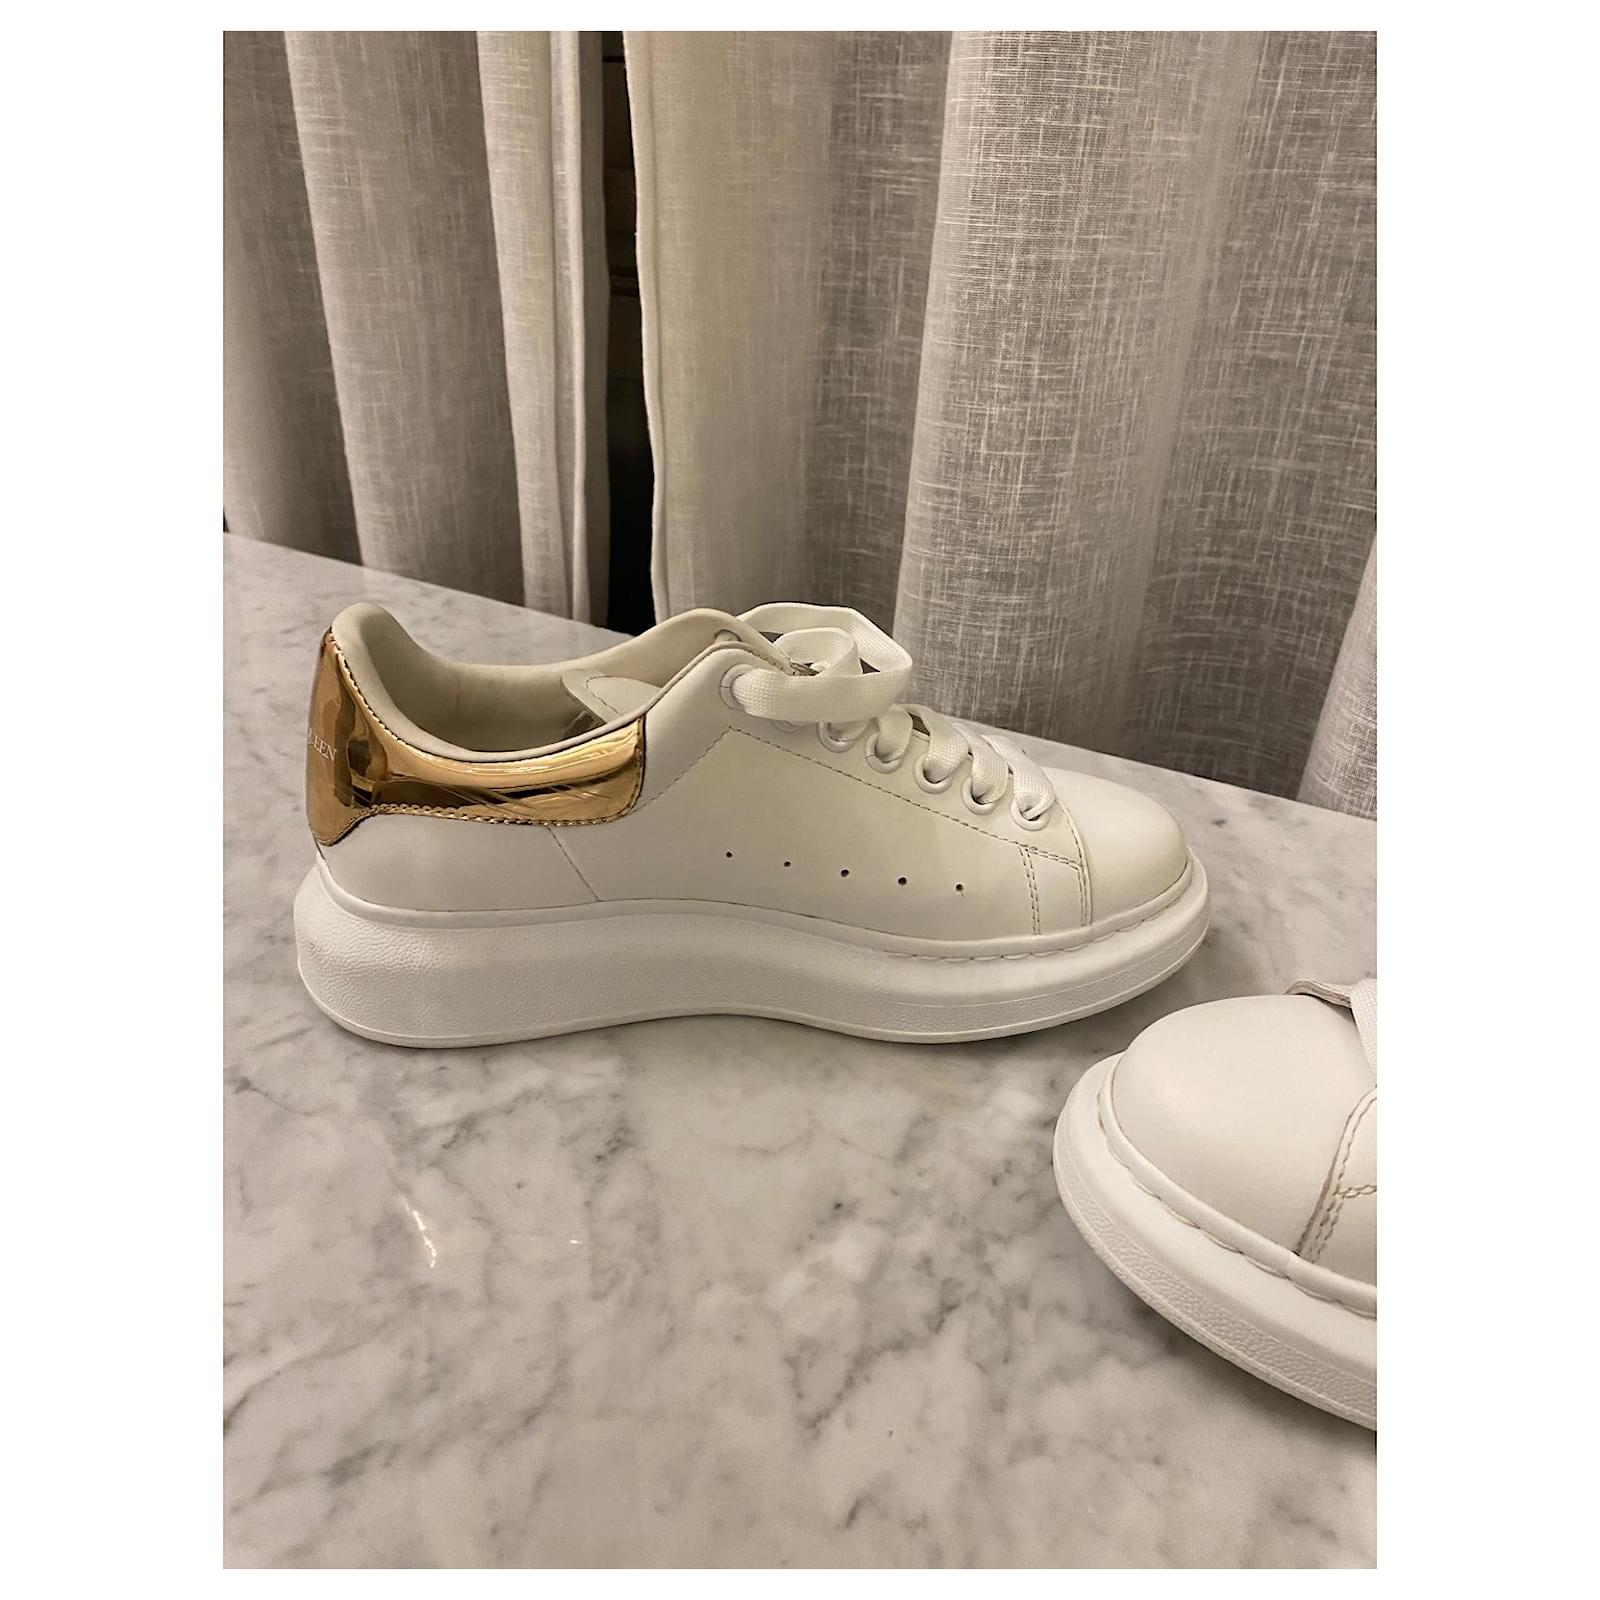 NEW Alexander McQueen Larry Oversized Sneaker White/Rose Gold EU 42 US 9 |  White rose gold, Sneakers white, Alexander mcqueen